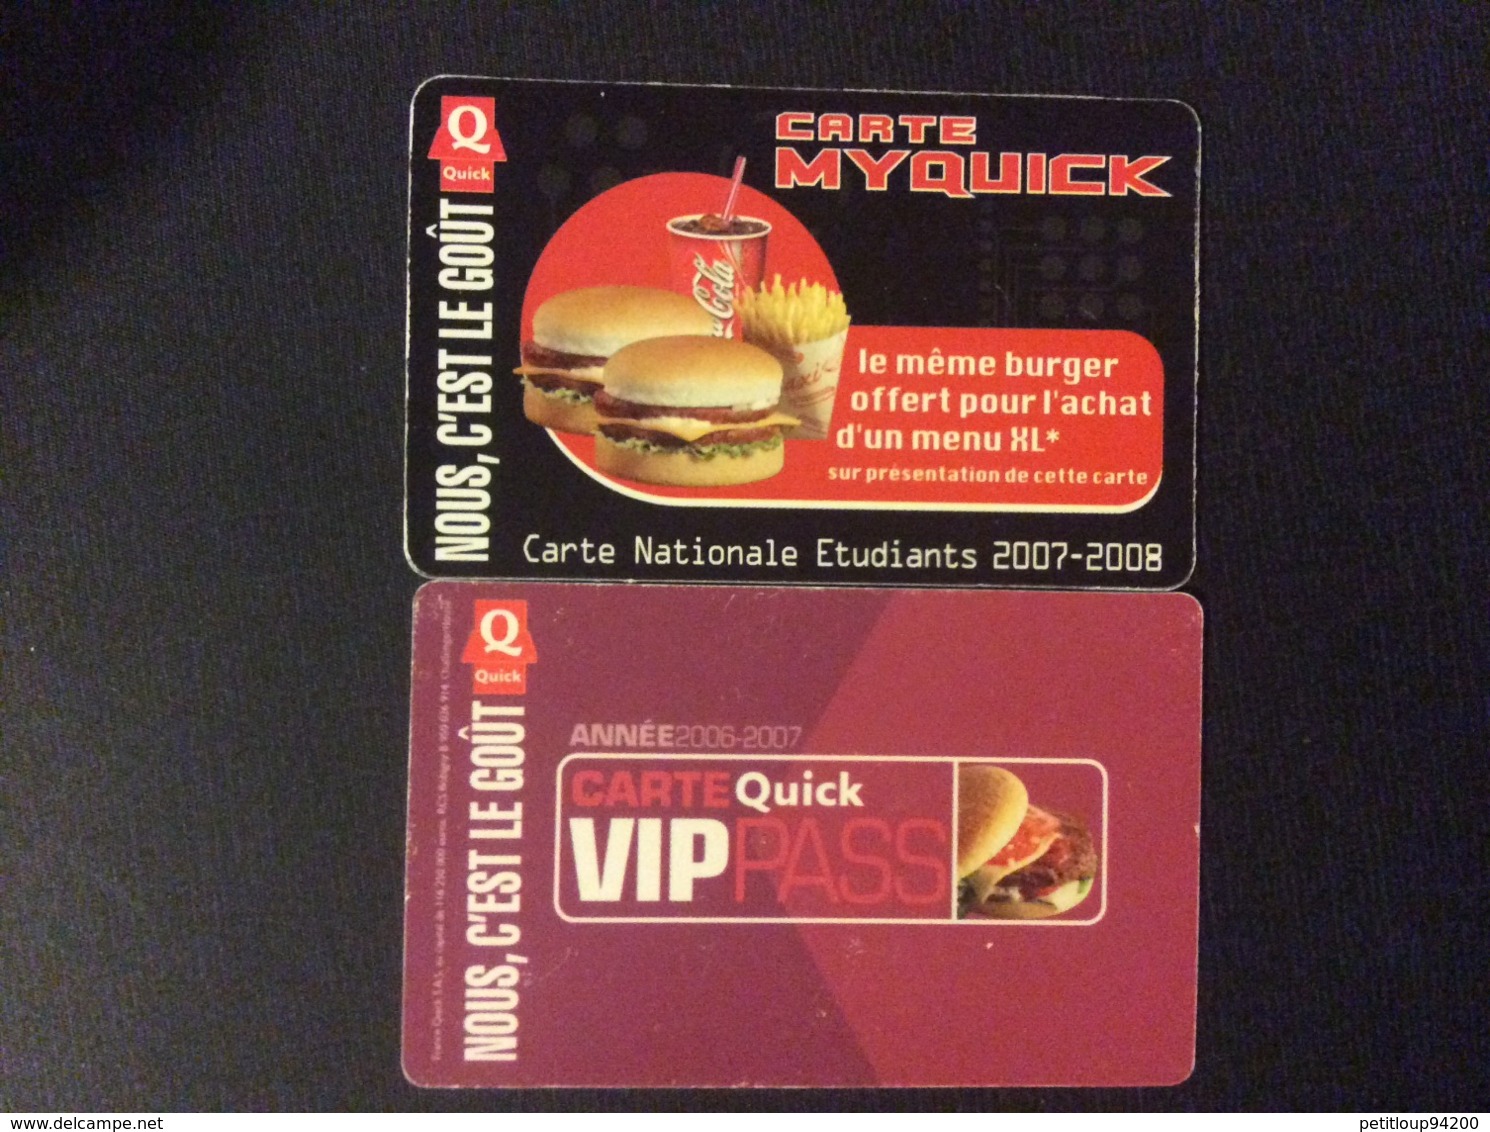 2 CARTES DE FIDELITE QUICK  *Carte Nationale Étudiants  *Carte Quick VIP Pass - Gift And Loyalty Cards